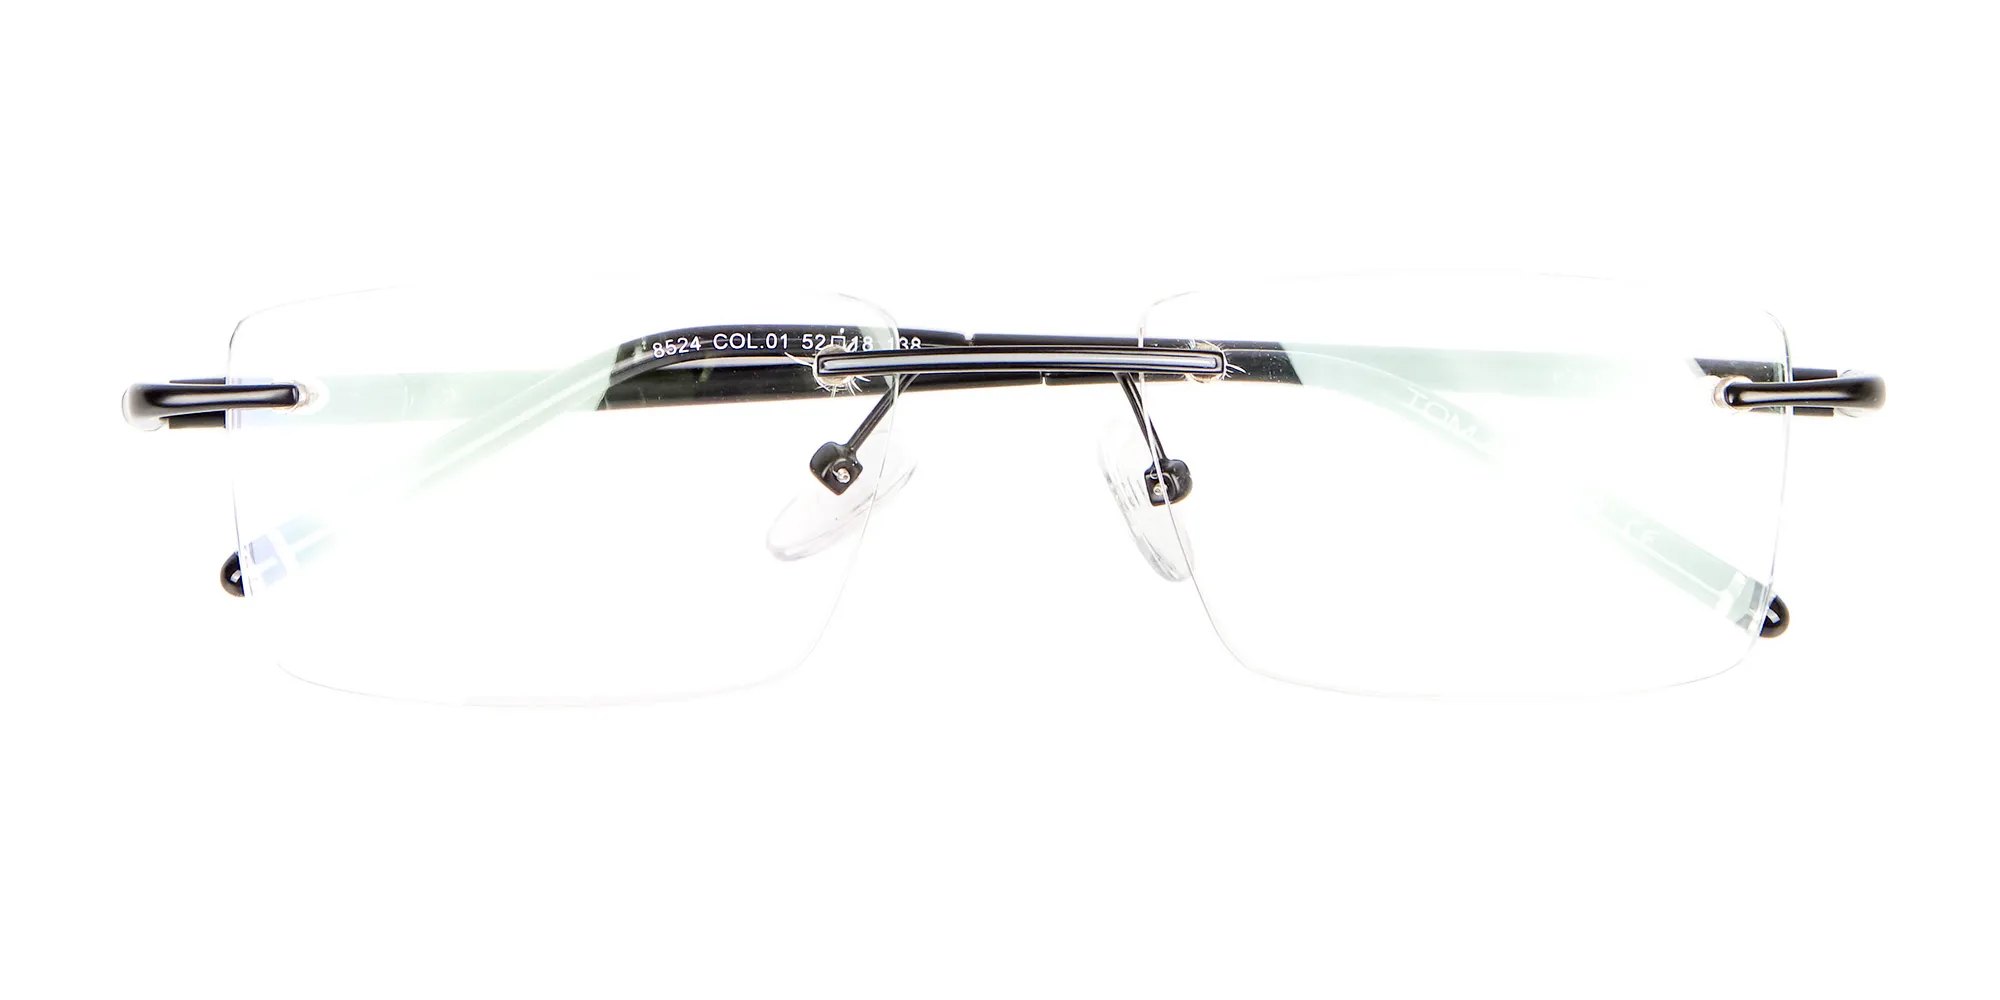 Latest Black Rimless Rectangular Glasses UK -2